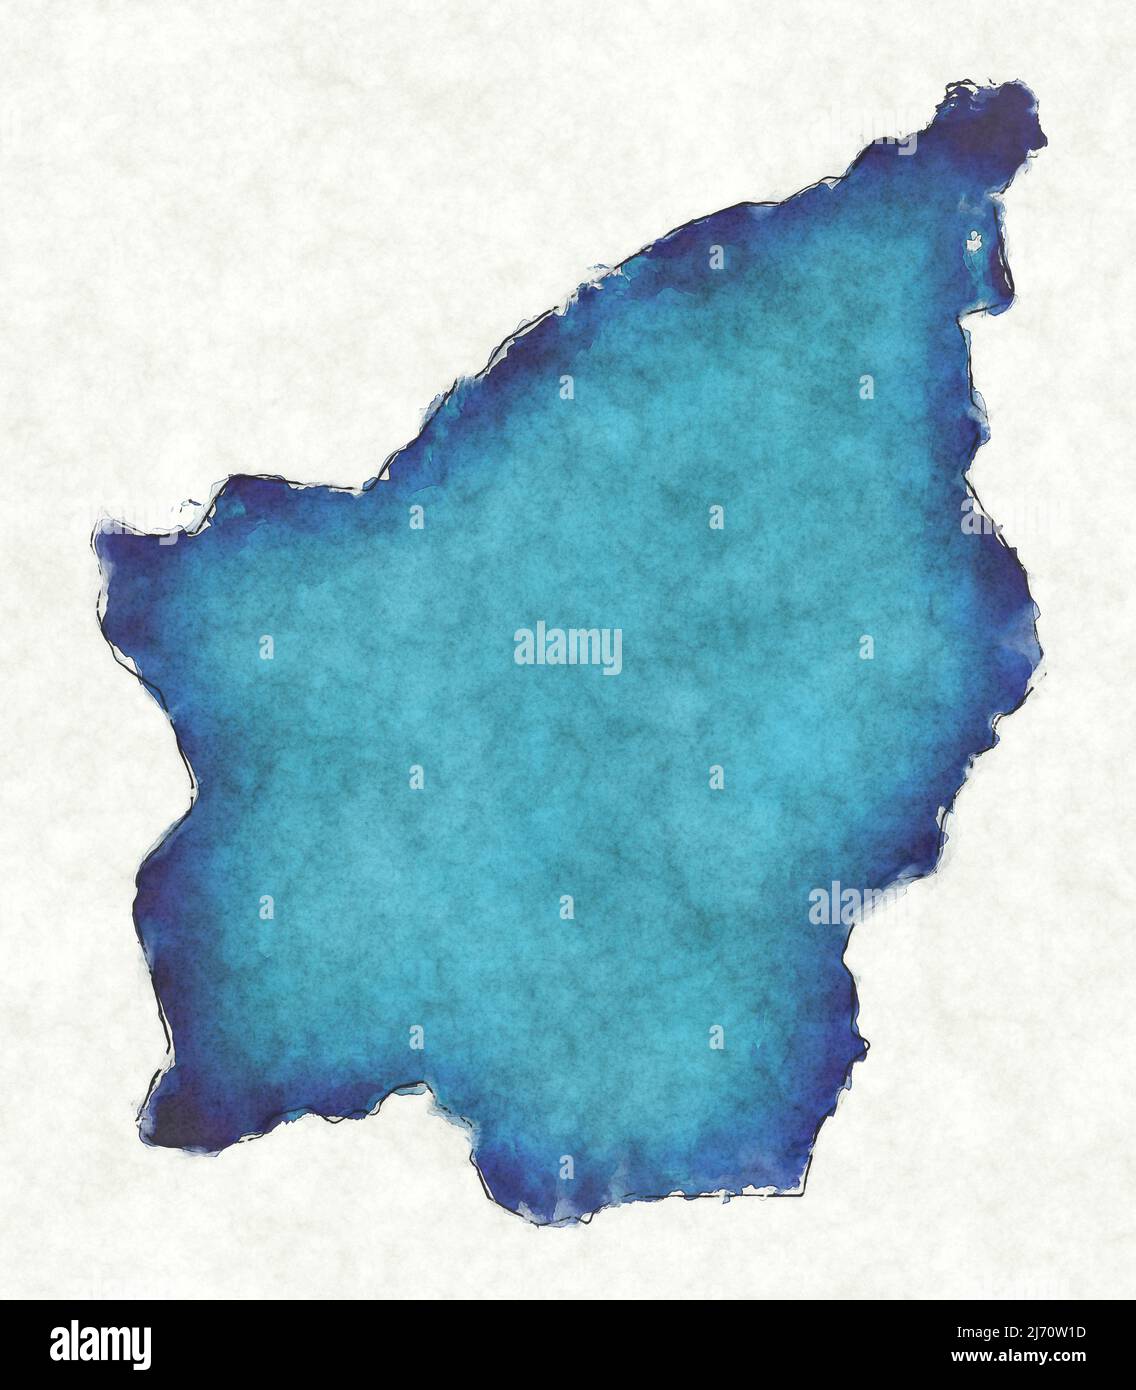 Mapa de San Marino con líneas dibujadas e ilustración de acuarela azul Foto de stock